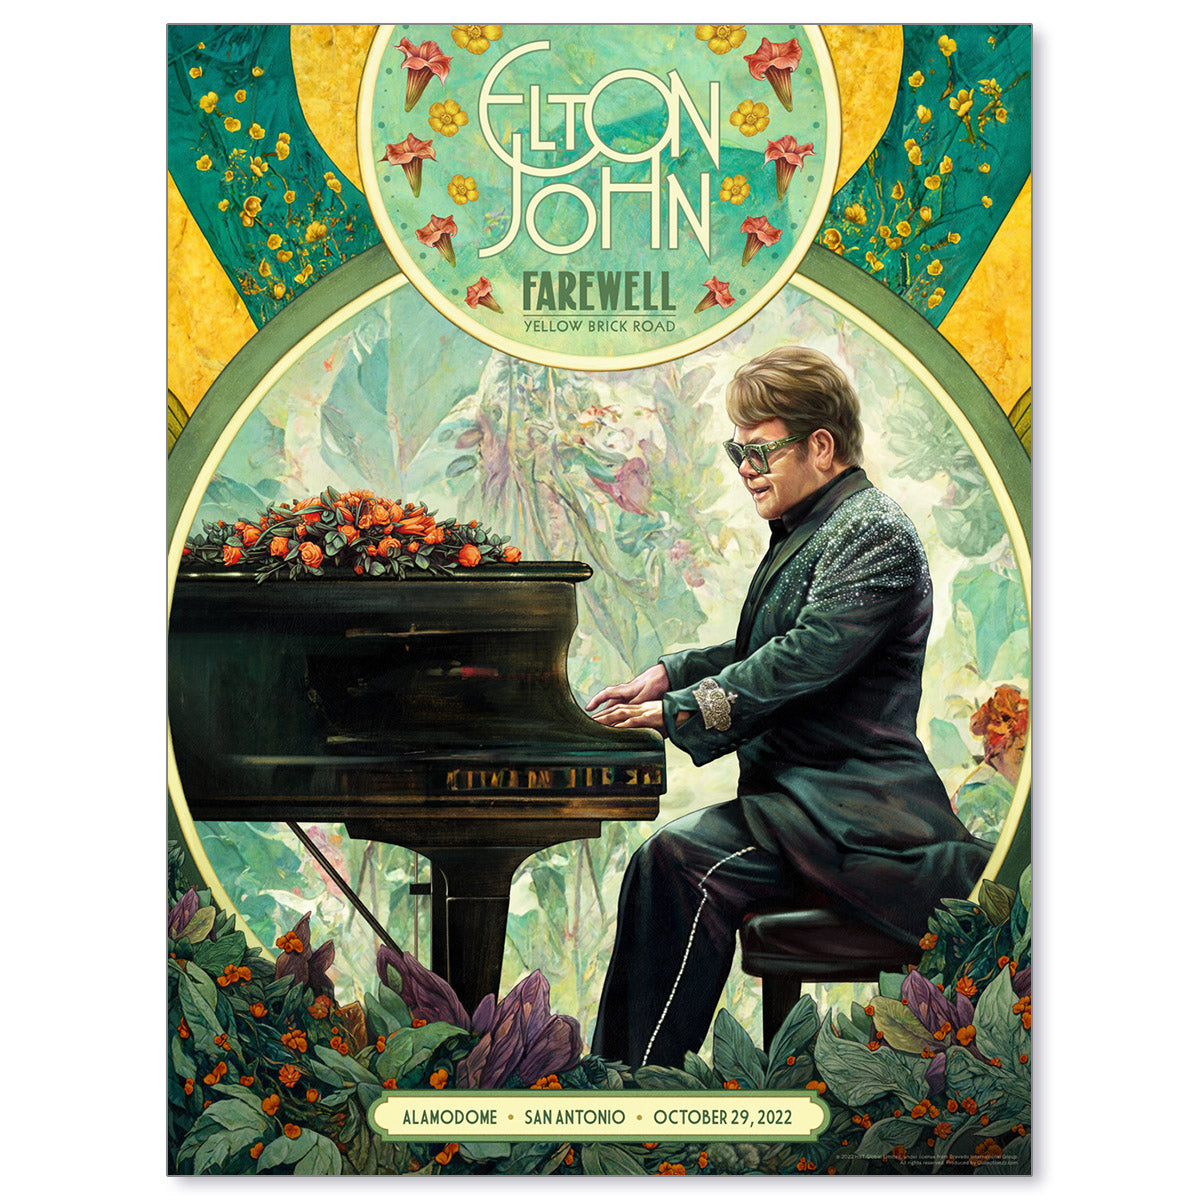 Elton John San Antonio October 29, 2022 Farewell Yellow Brick Road Tour